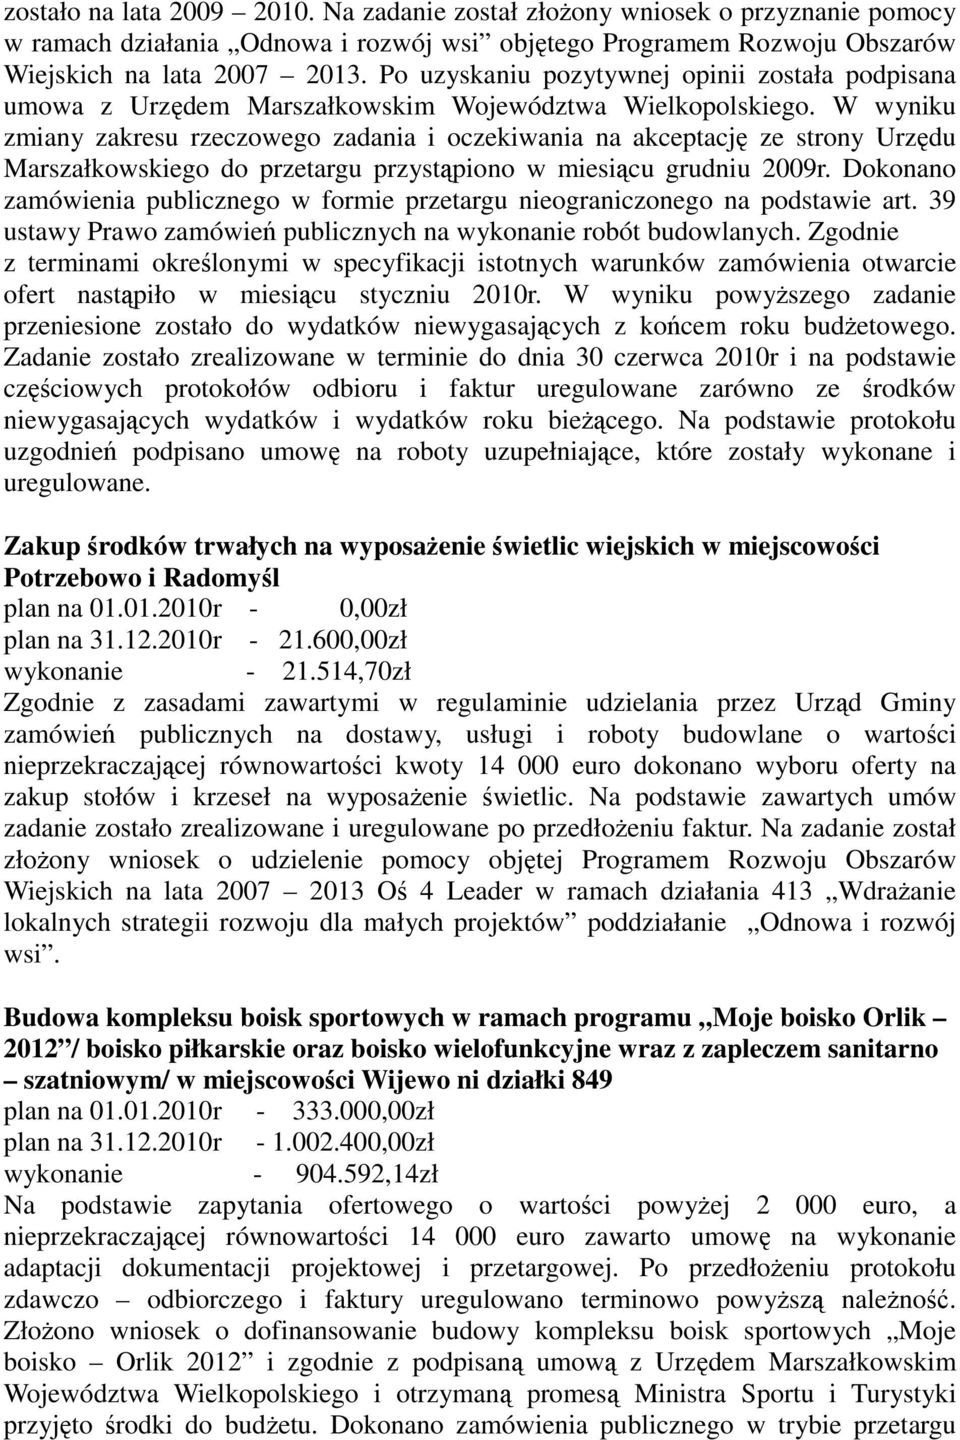 W wyniku zmiany zakresu rzeczowego zadania i oczekiwania na akceptację ze strony Urzędu Marszałkowskiego do przetargu przystąpiono w miesiącu grudniu 2009r.